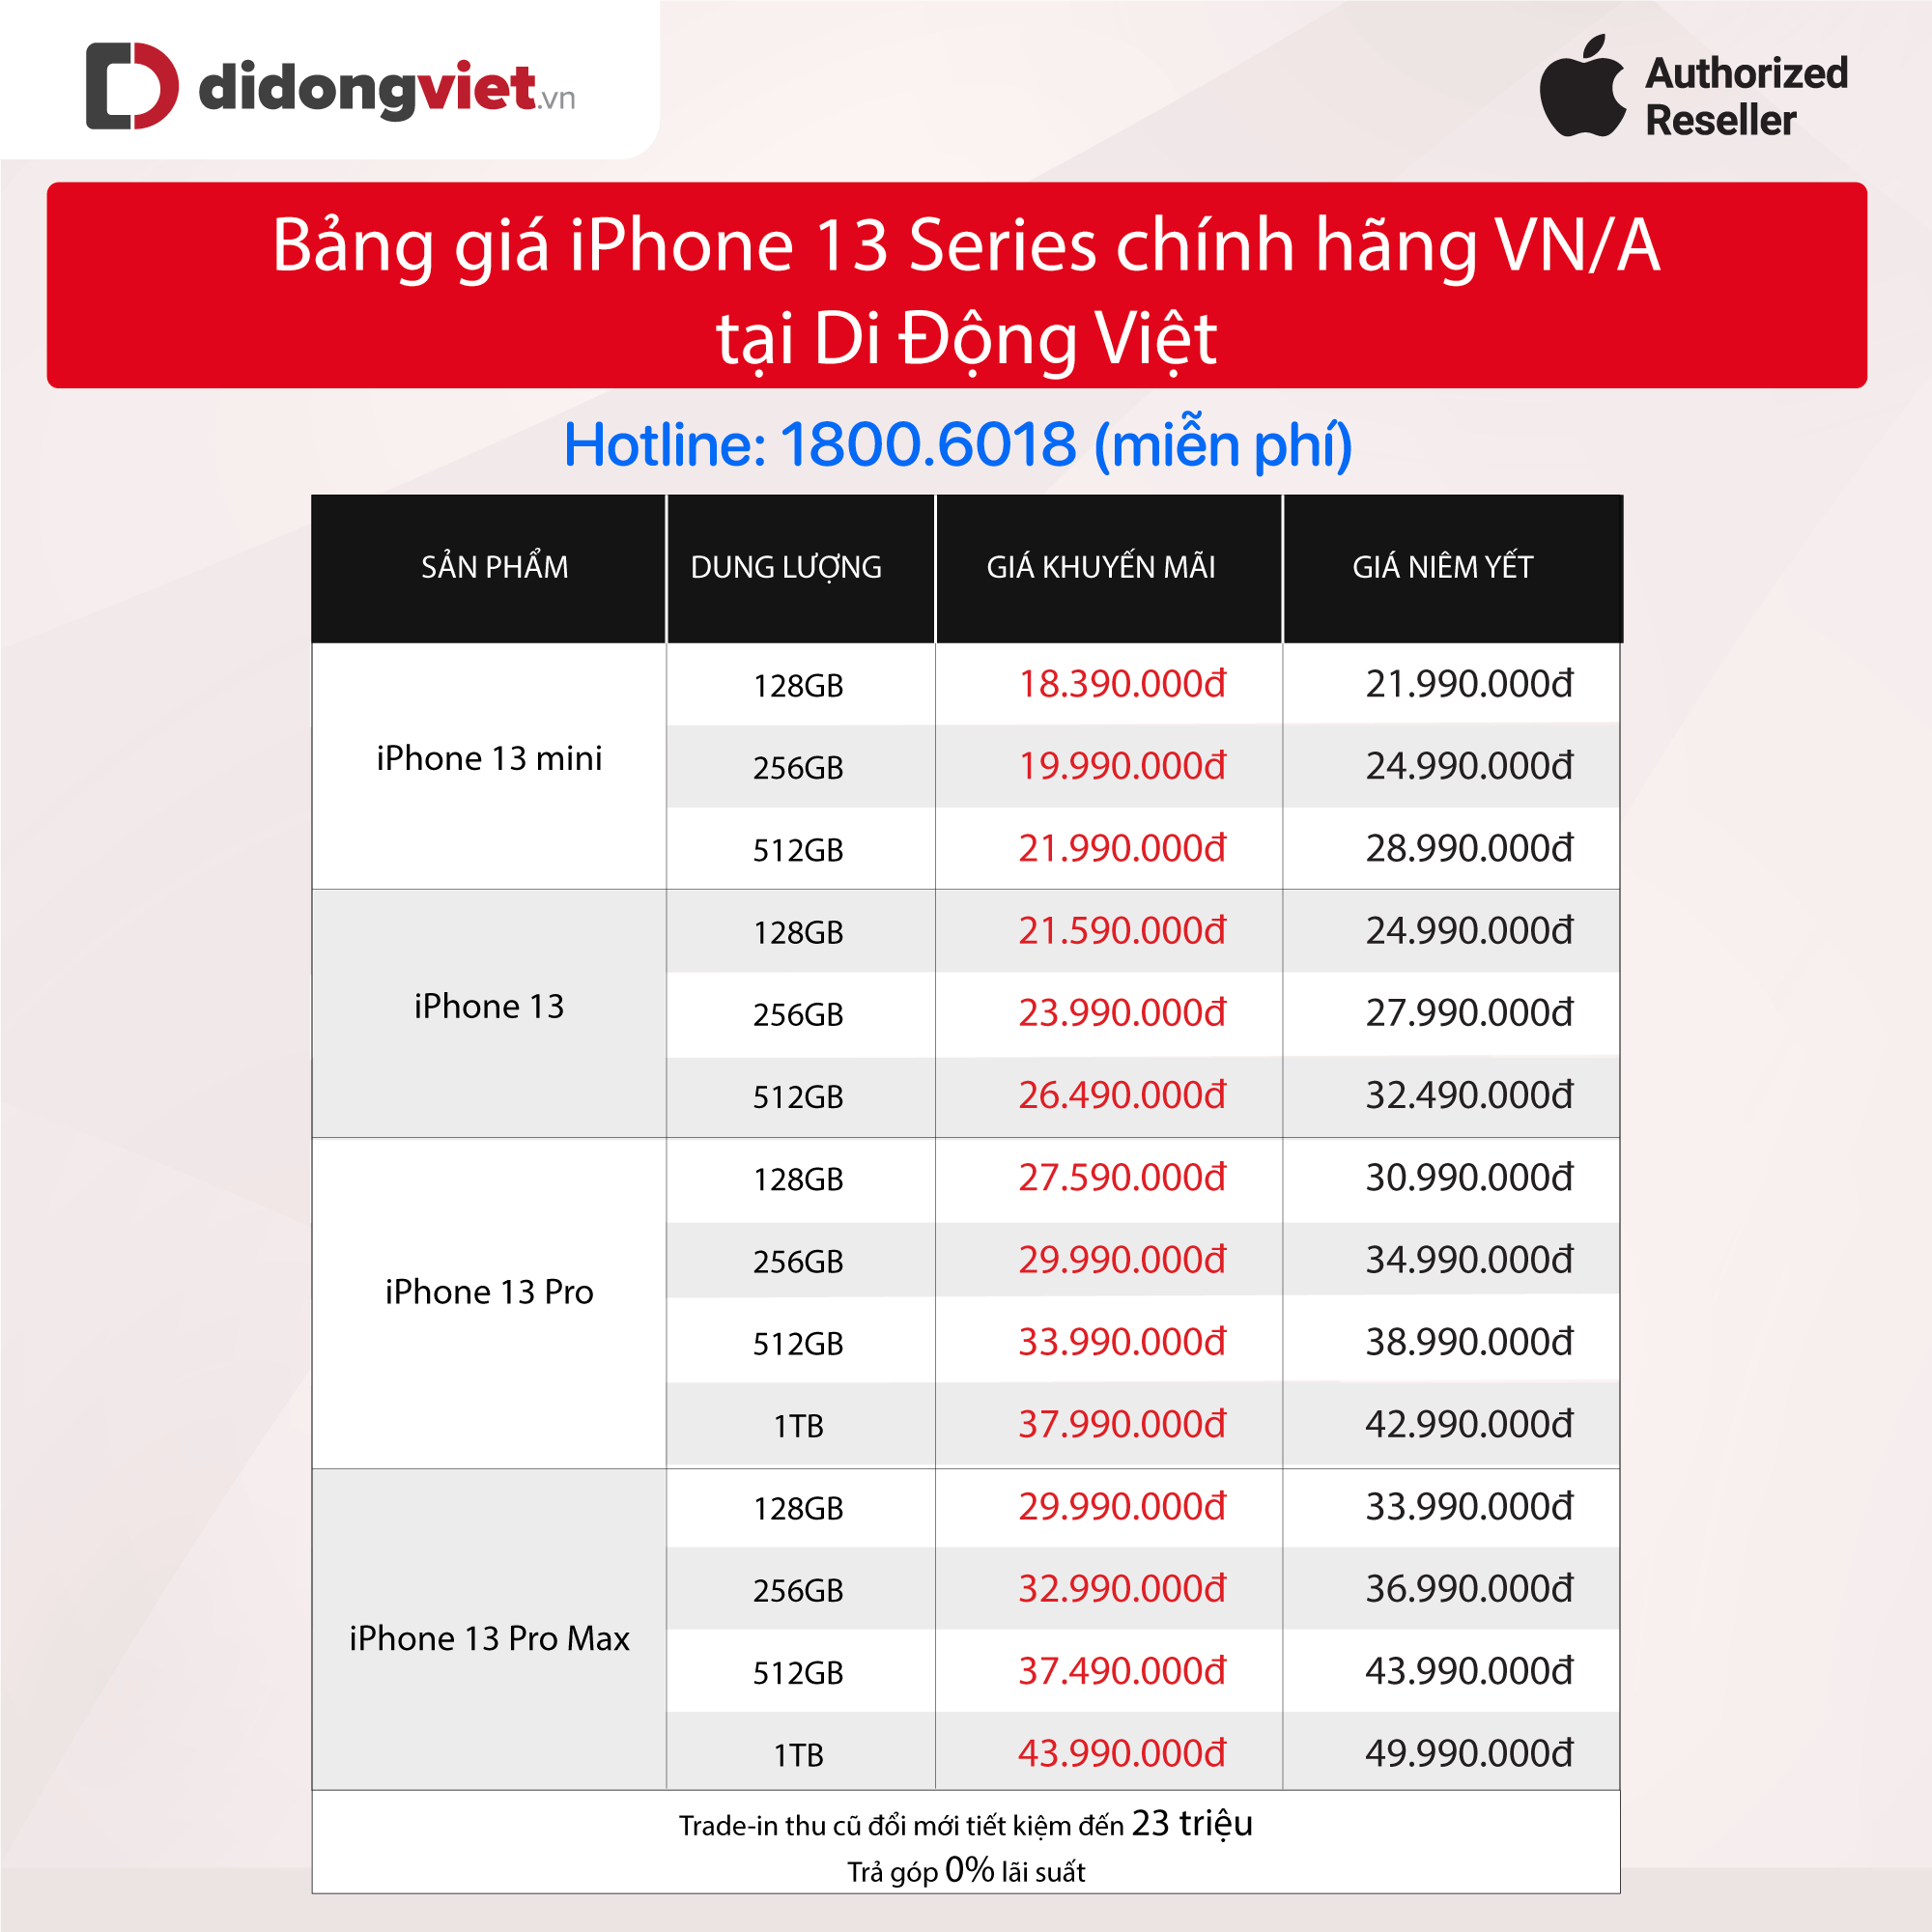 “Chốt sổ” tháng 2: iPhone 13 series vẫn là dòng điện thoại được chọn mua nhiều nhất